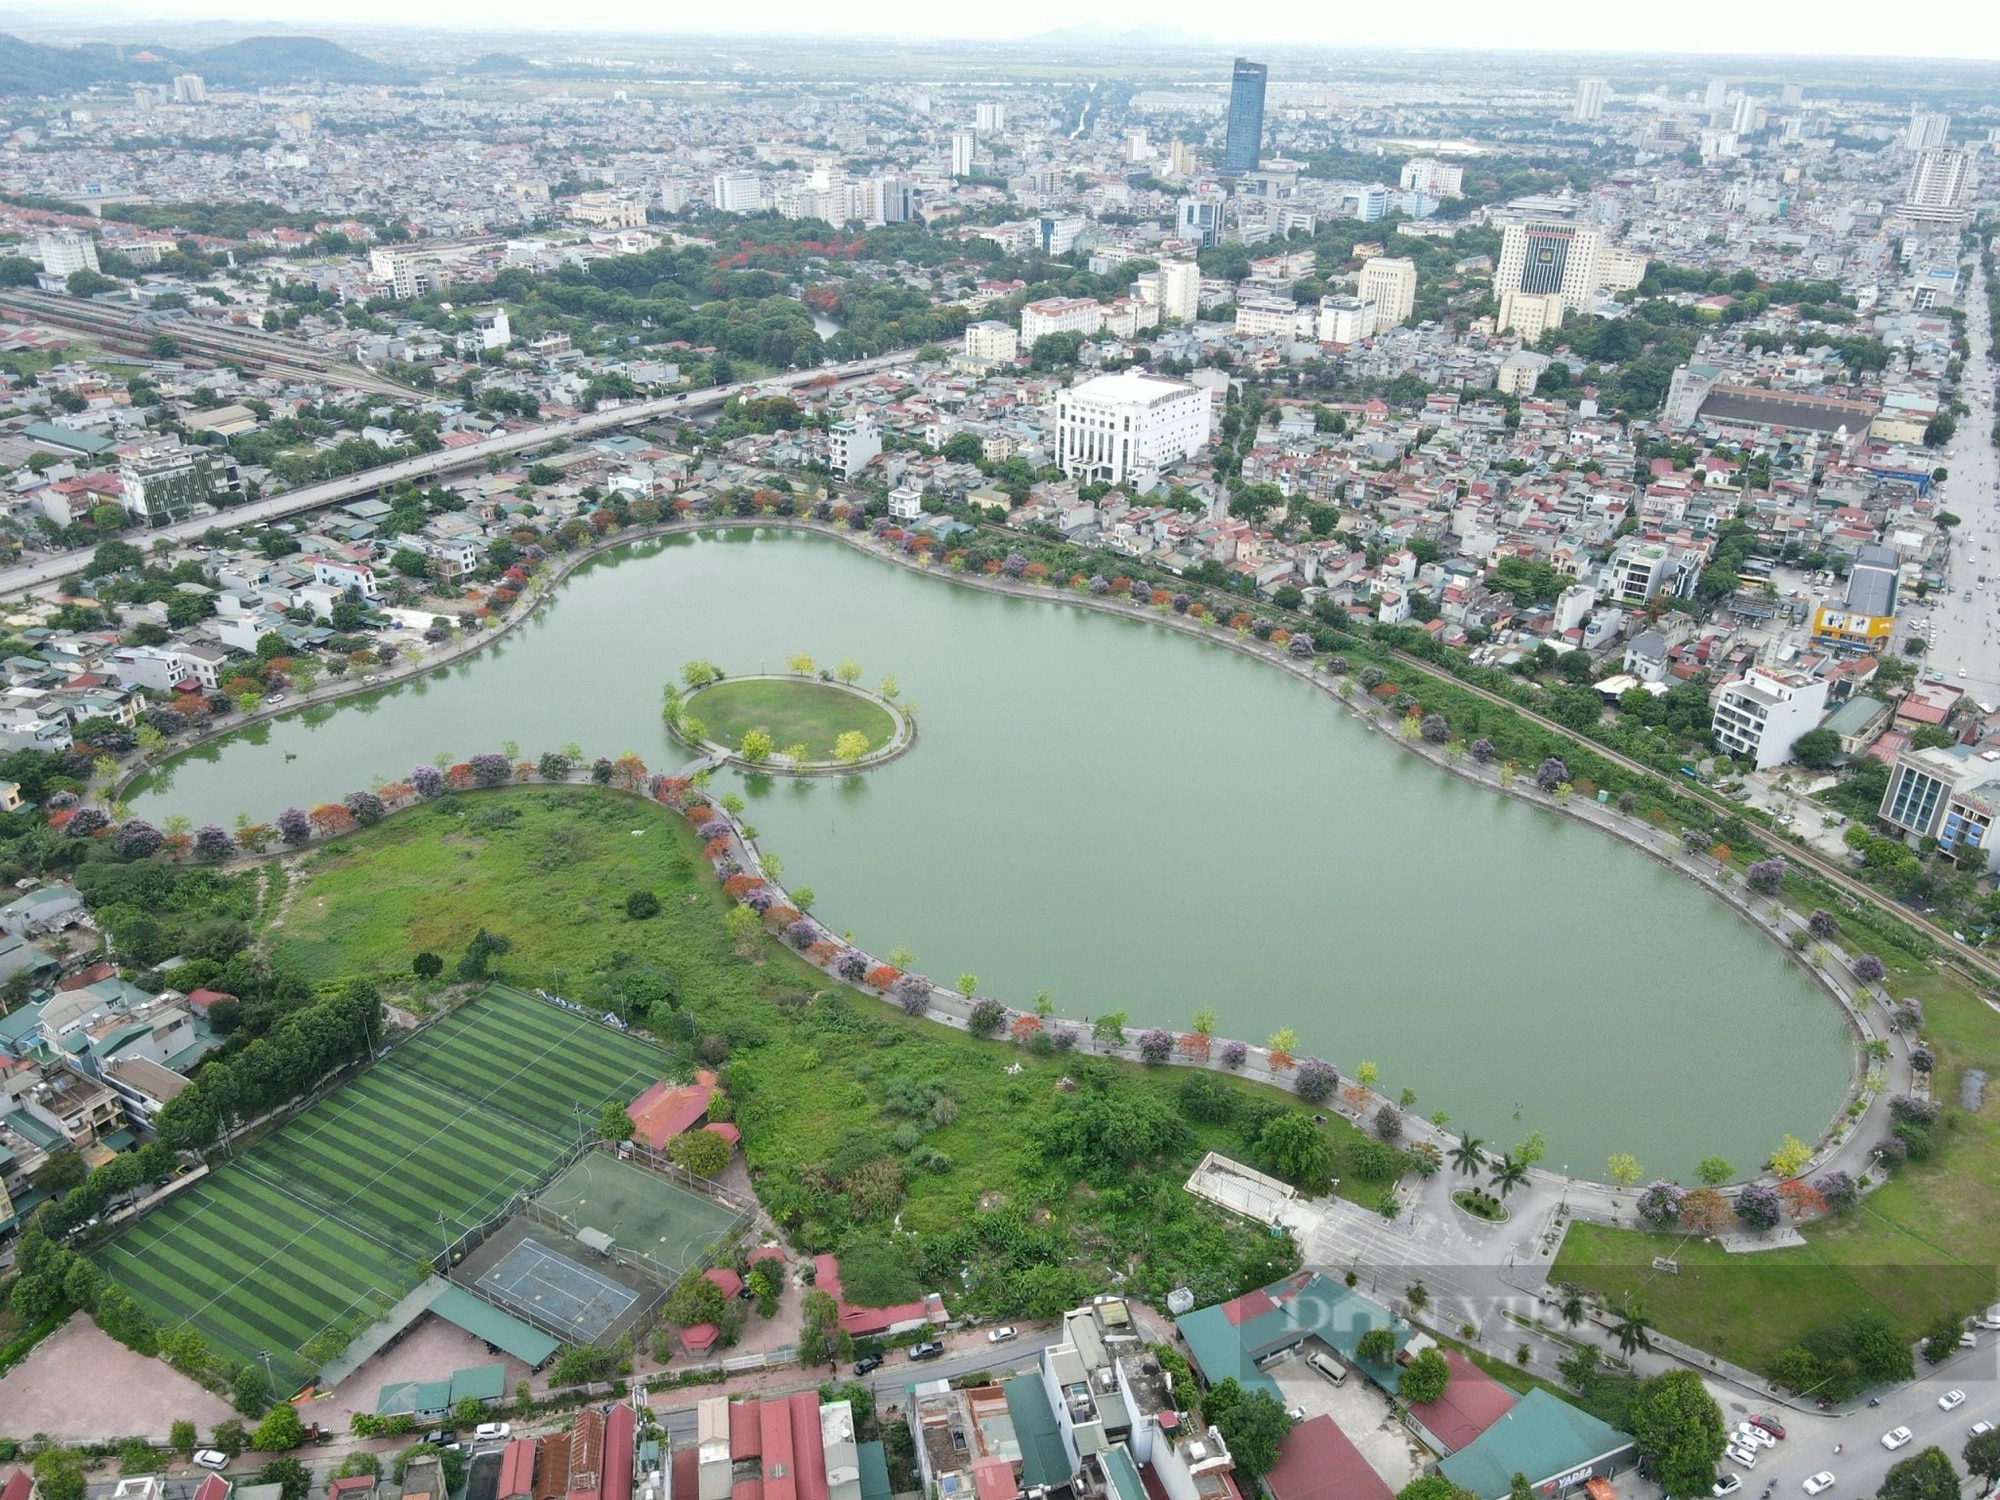 Hồ Đồng Chiệc - 